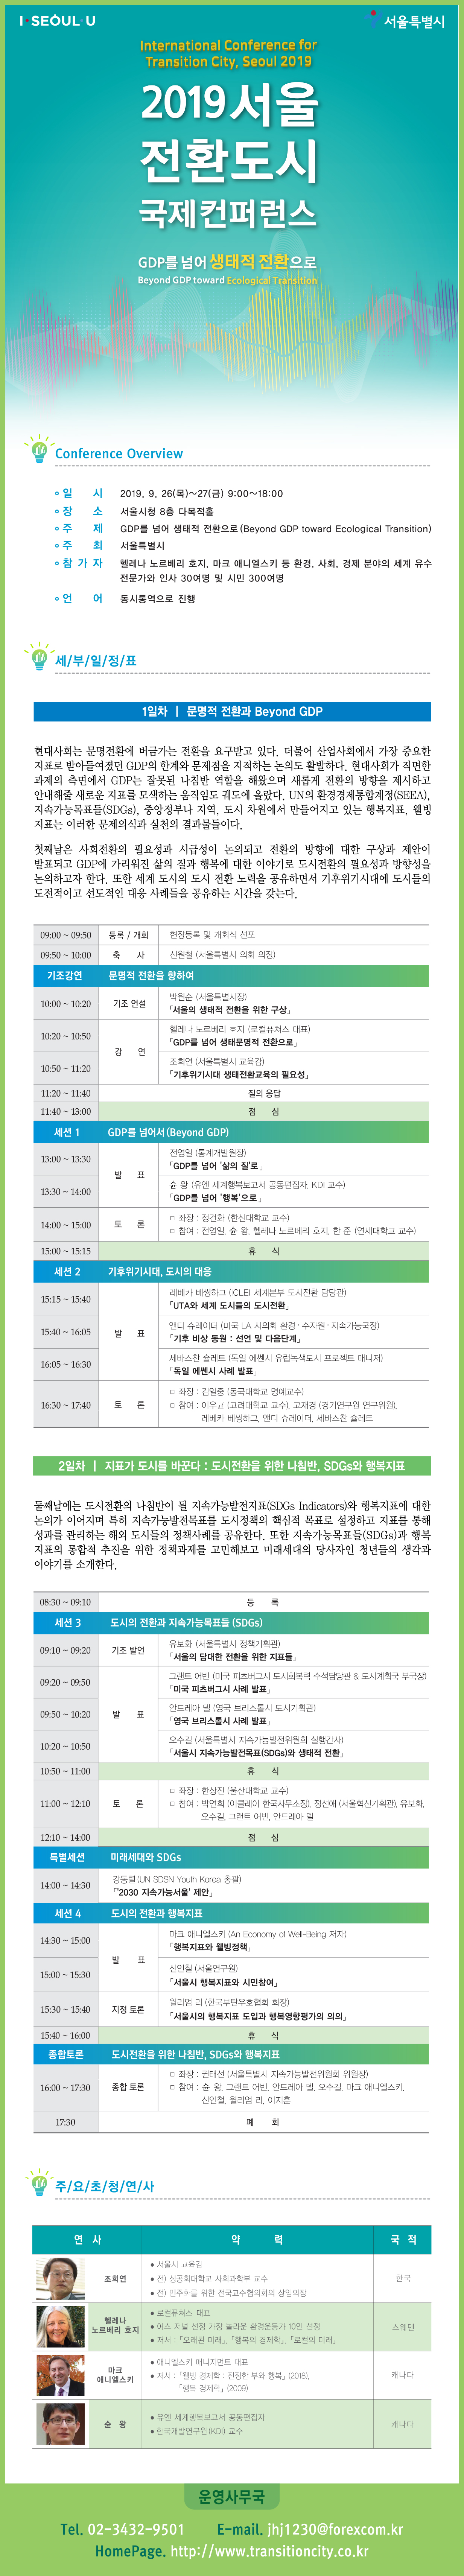 서울 전환도시 국제컨퍼런스 개최